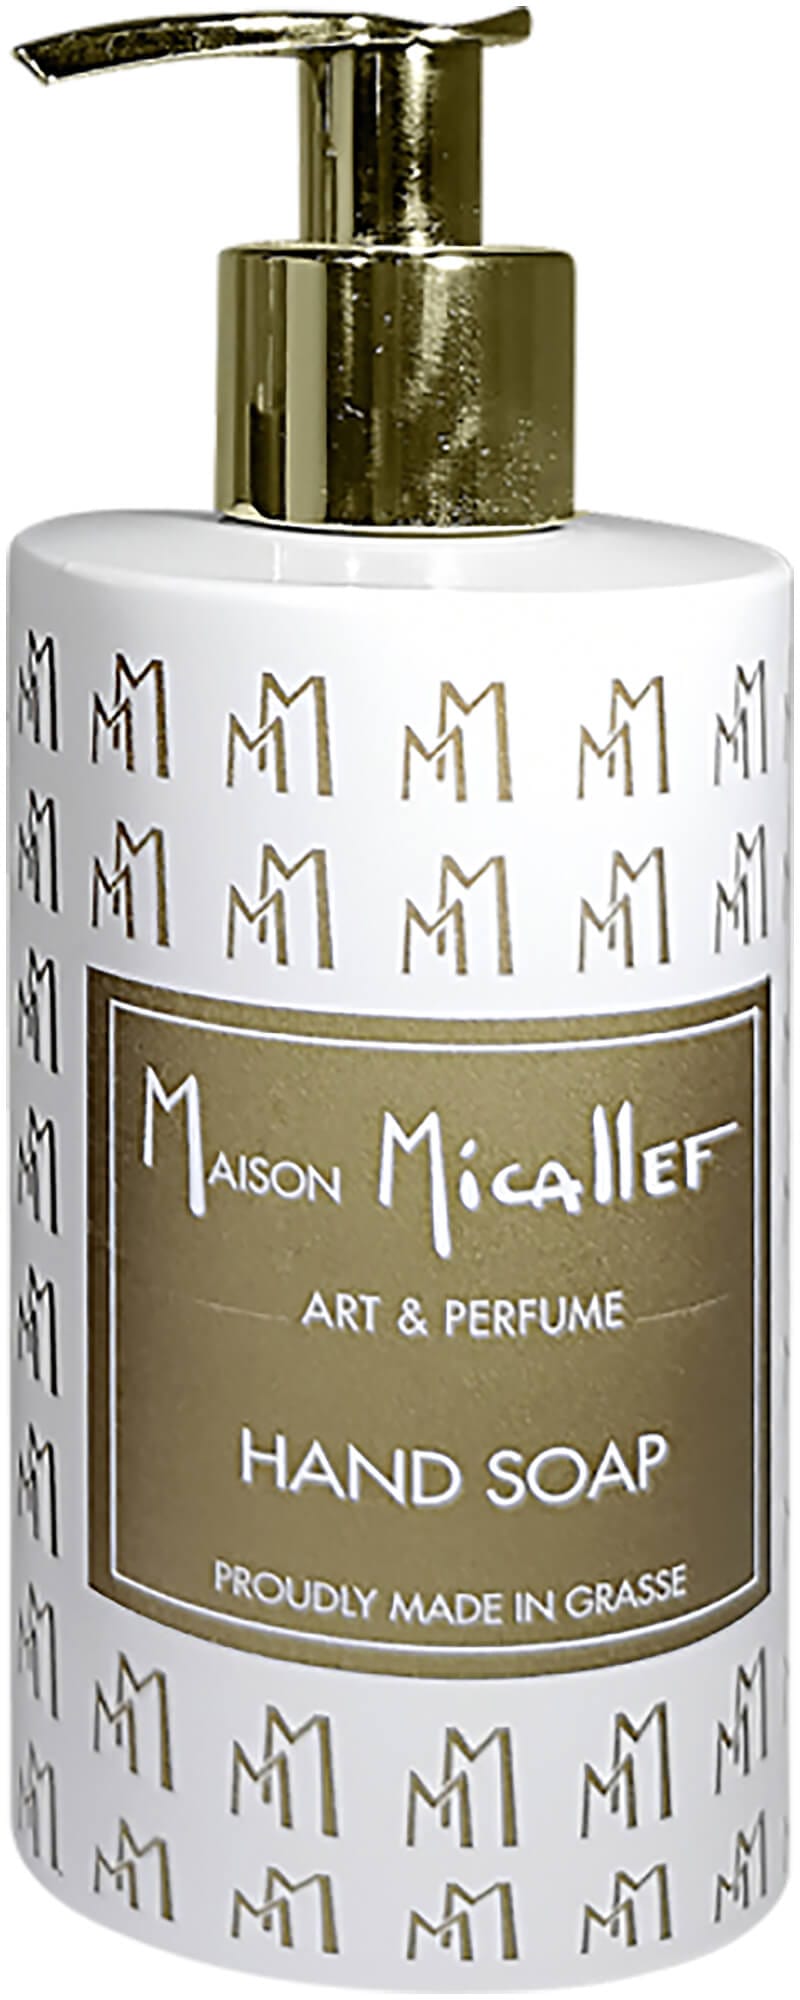 M.Micallef Art & Perfume Hand Soap 250 ml von M.Micallef